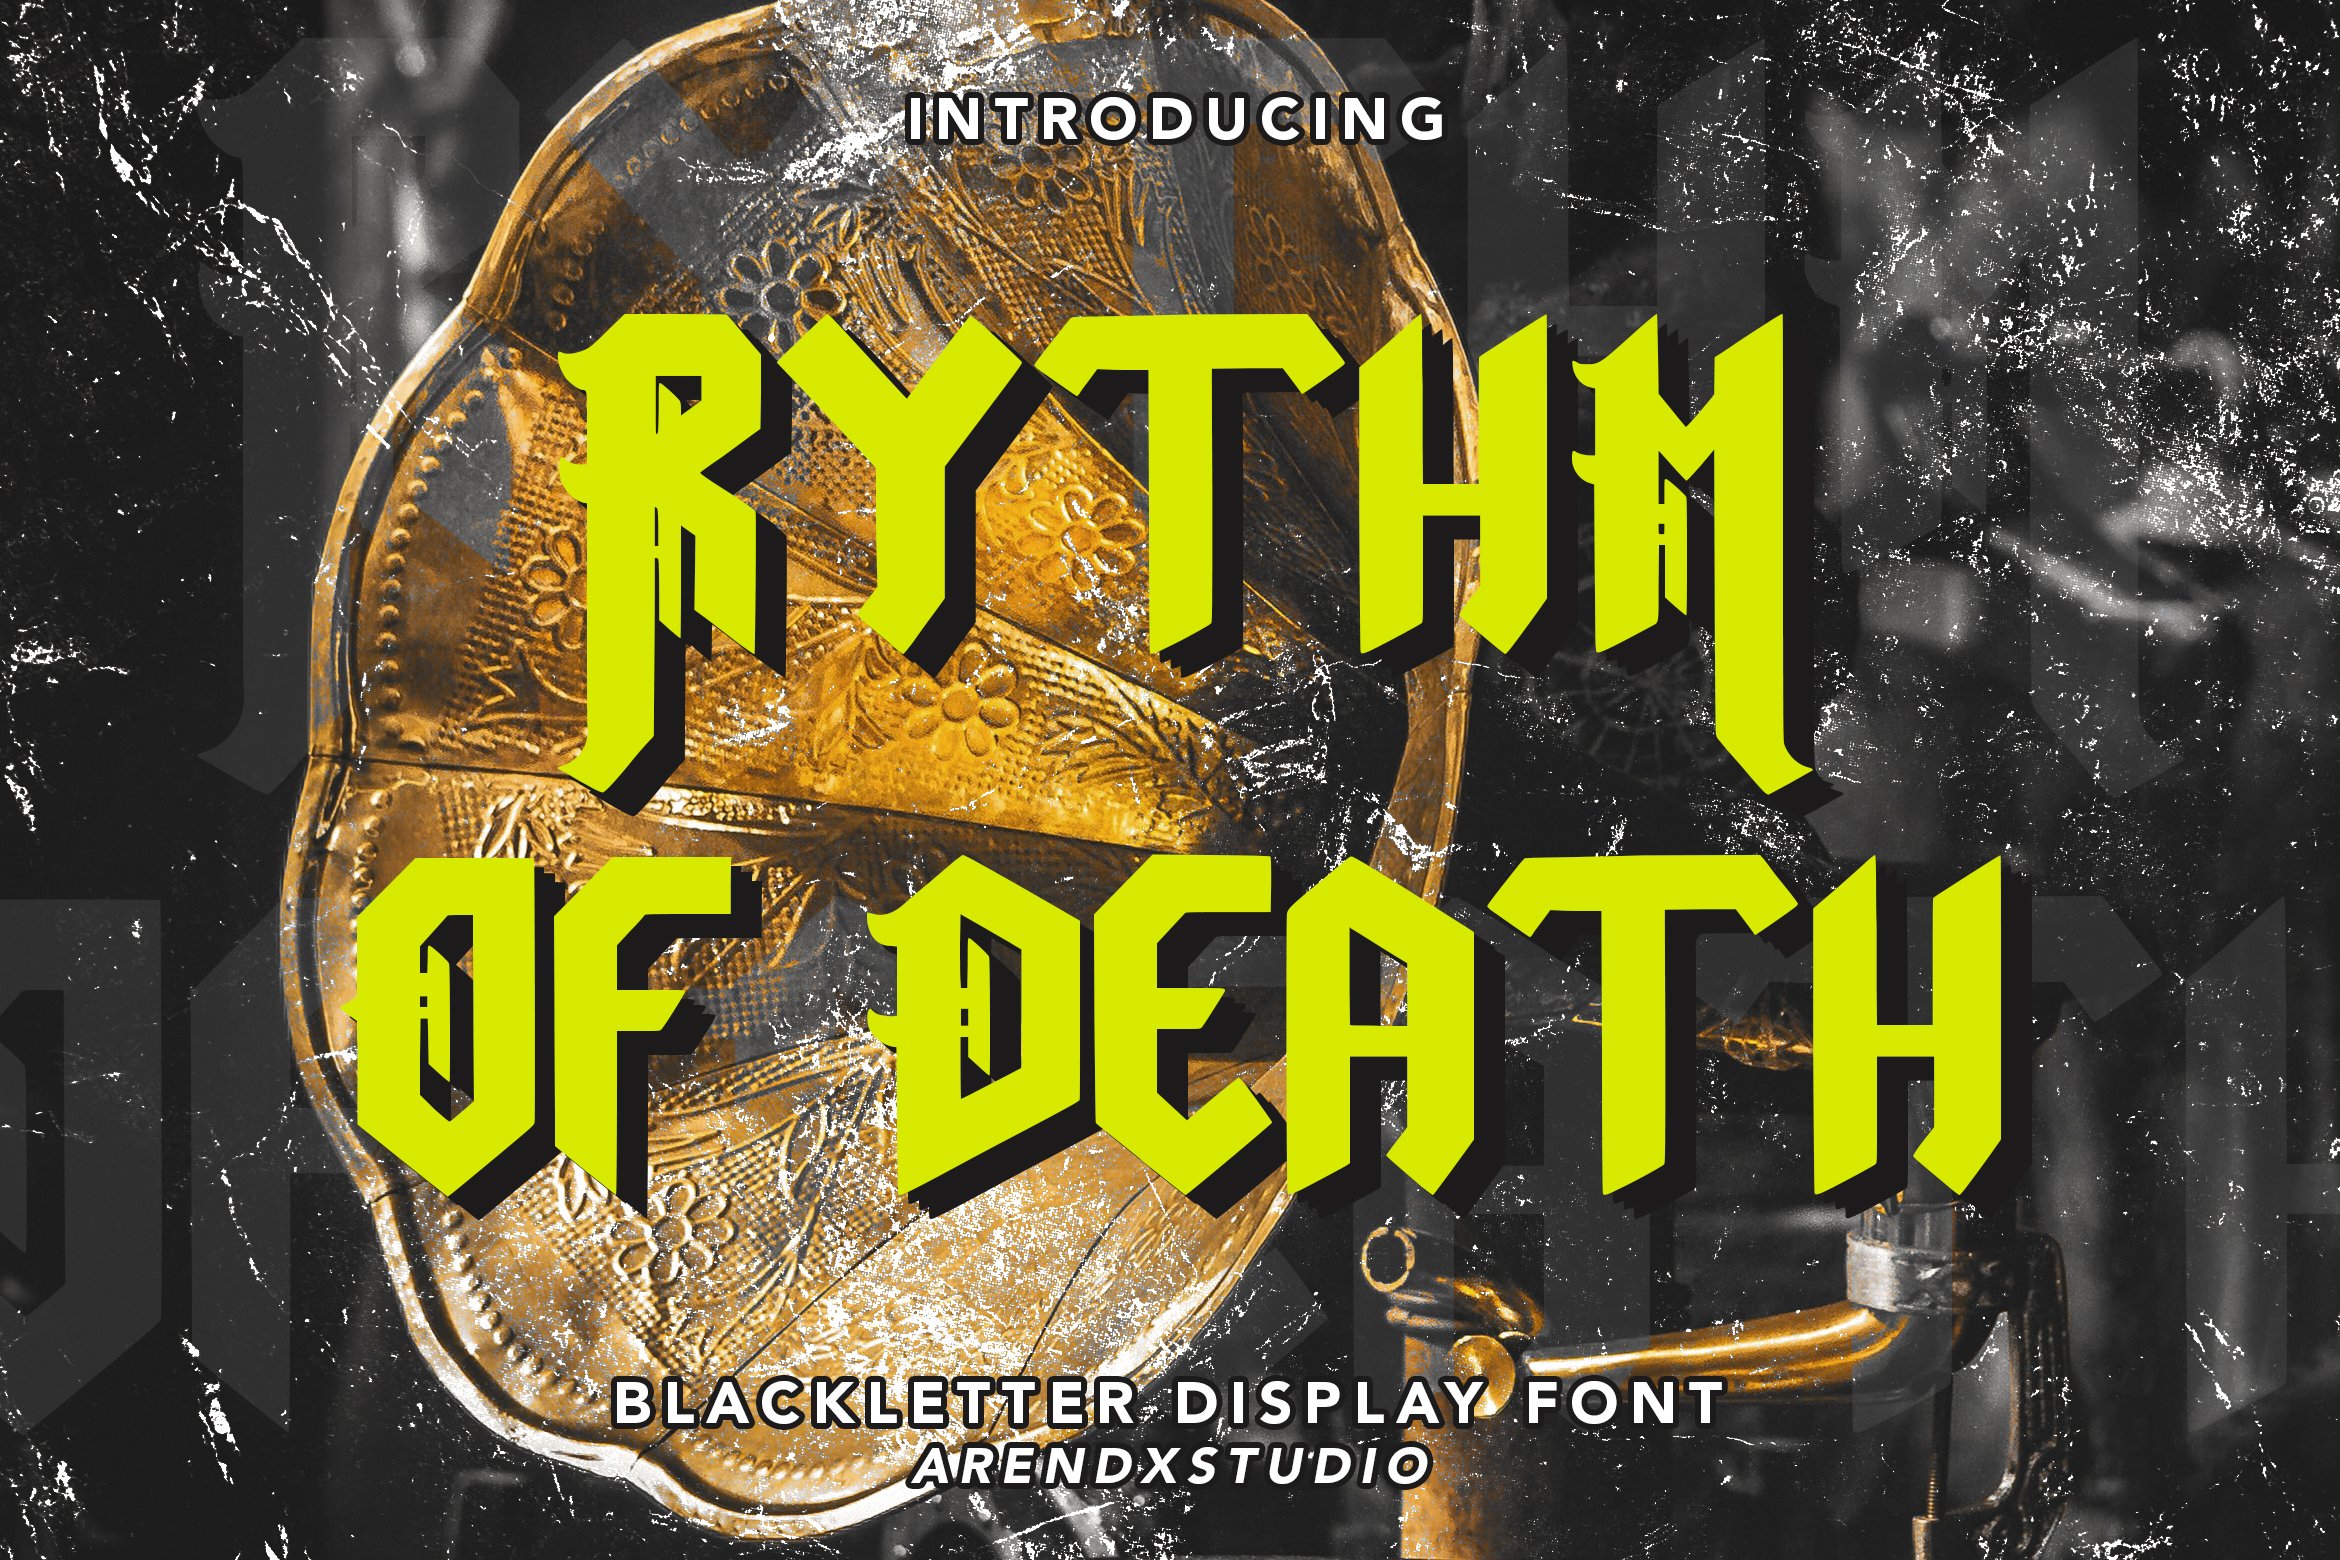 Rythm Of Death - Blackletter Font cover image.